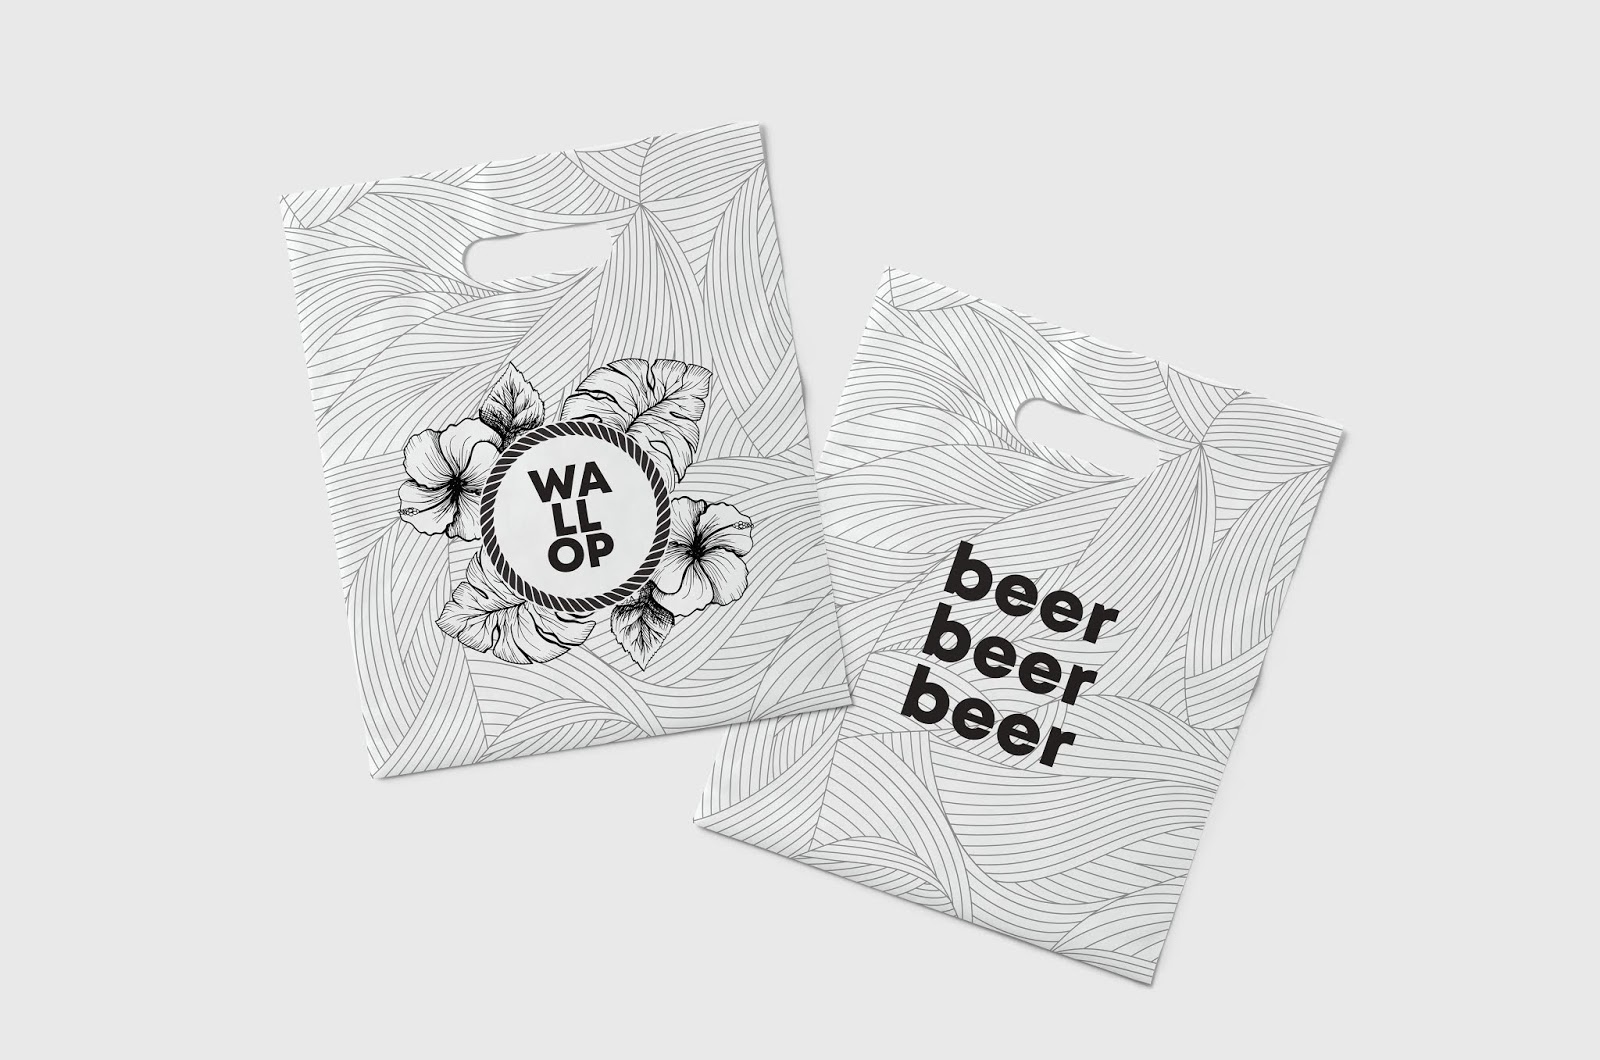 啤酒包装设计，啤酒品牌形象设计，啤酒品牌包装设计，啤酒外包装设计，上海啤酒包装设计公司，啤酒包装策划设计，啤酒全案创意设计，啤酒饮料包装设计